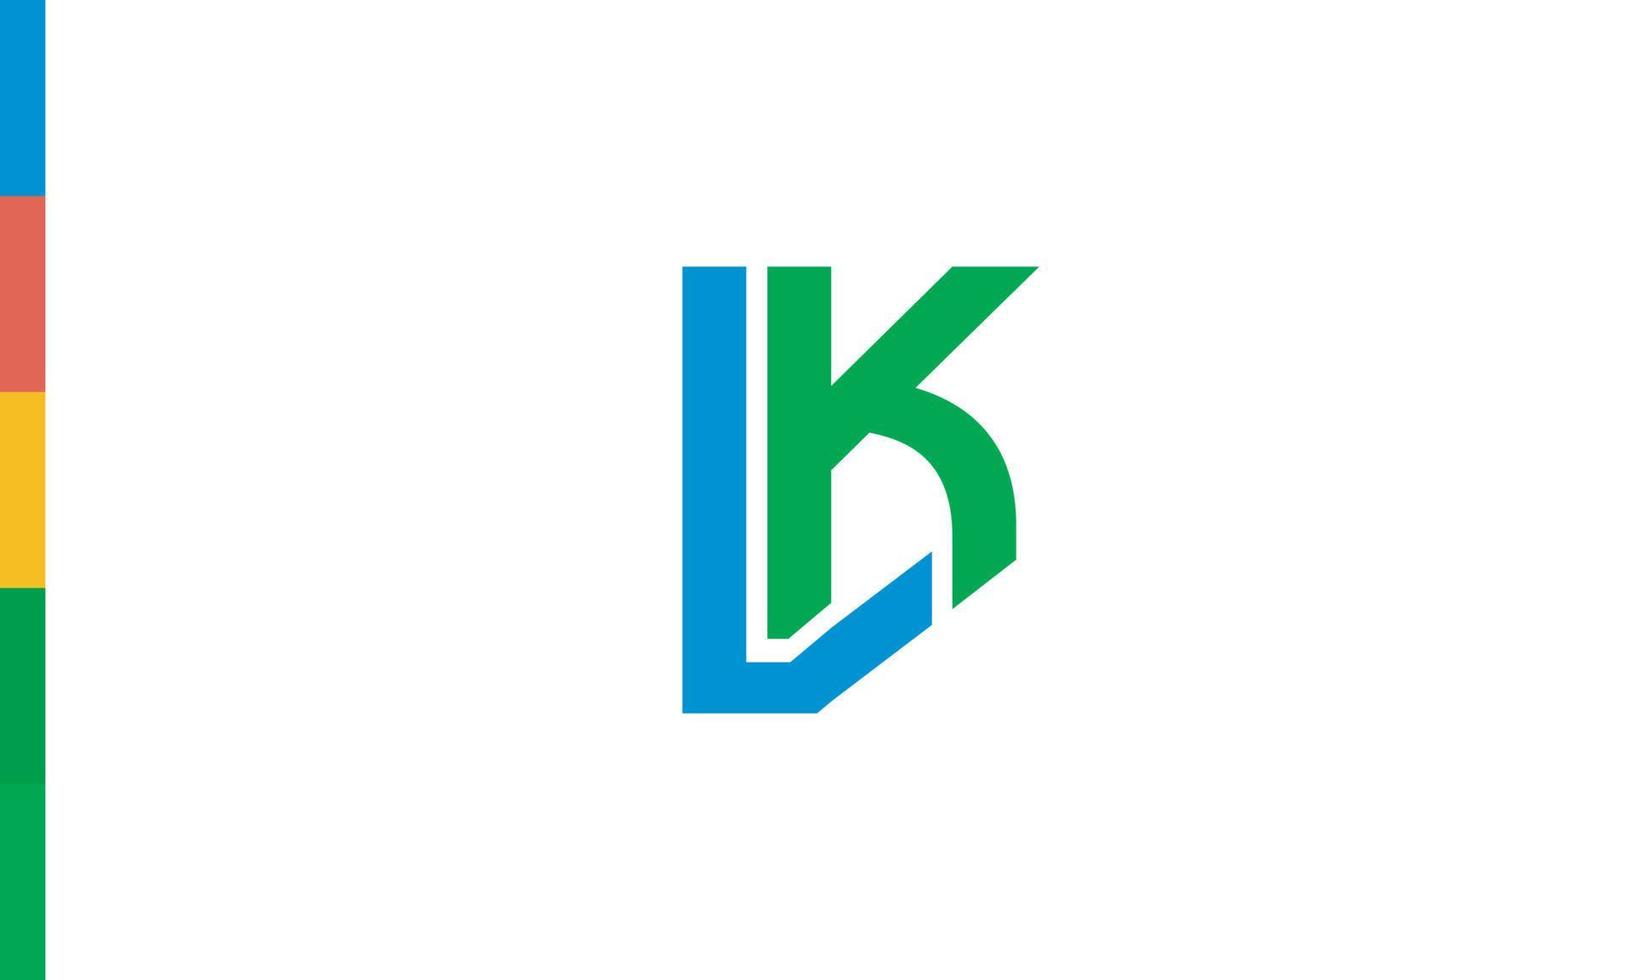 alfabeto lettere iniziali monogramma logo lk, kl, l e k vettore